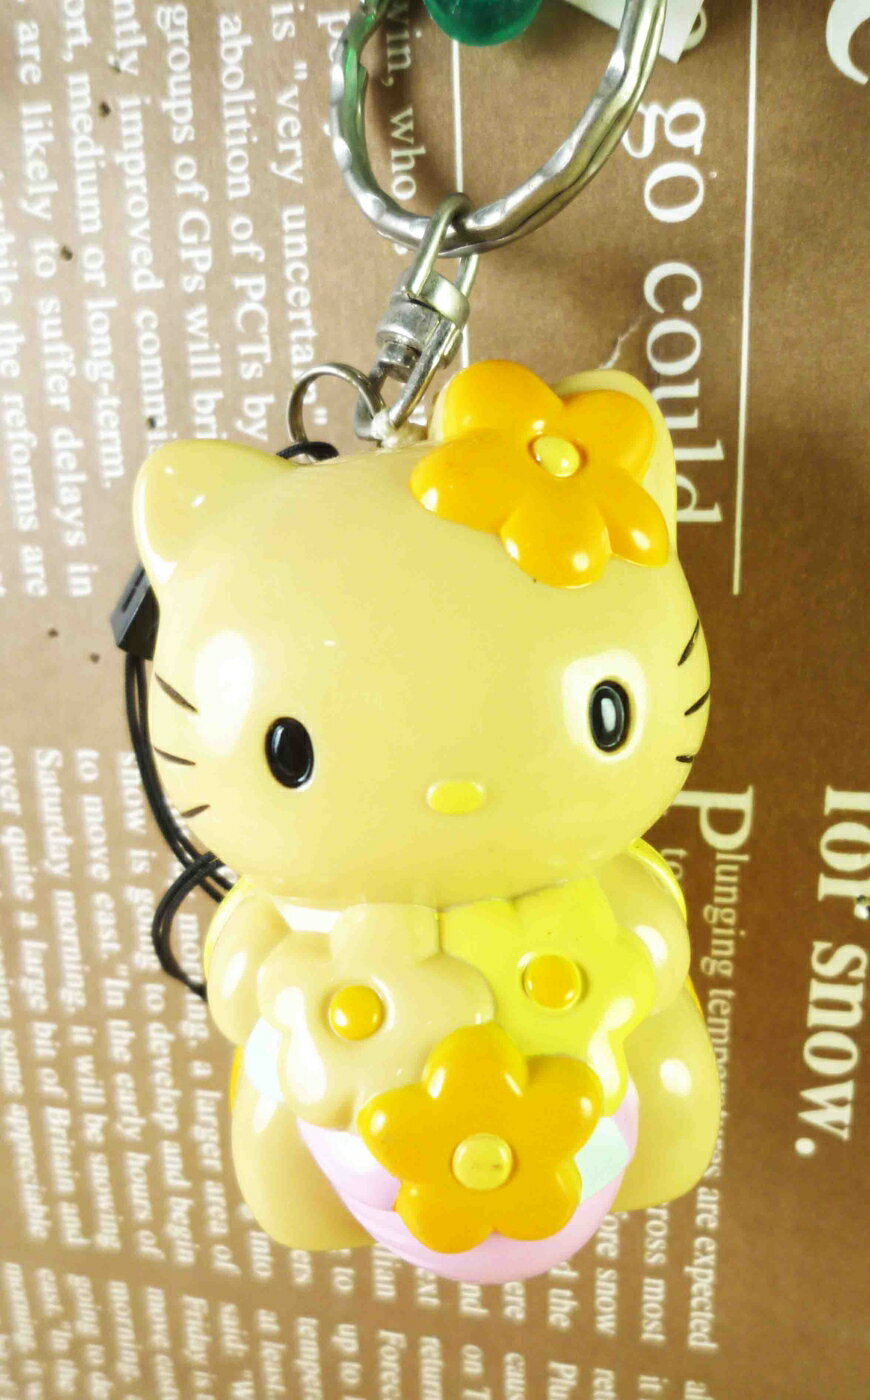 【震撼精品百貨】Hello Kitty 凱蒂貓 鎖圈-拉繩黃 震撼日式精品百貨